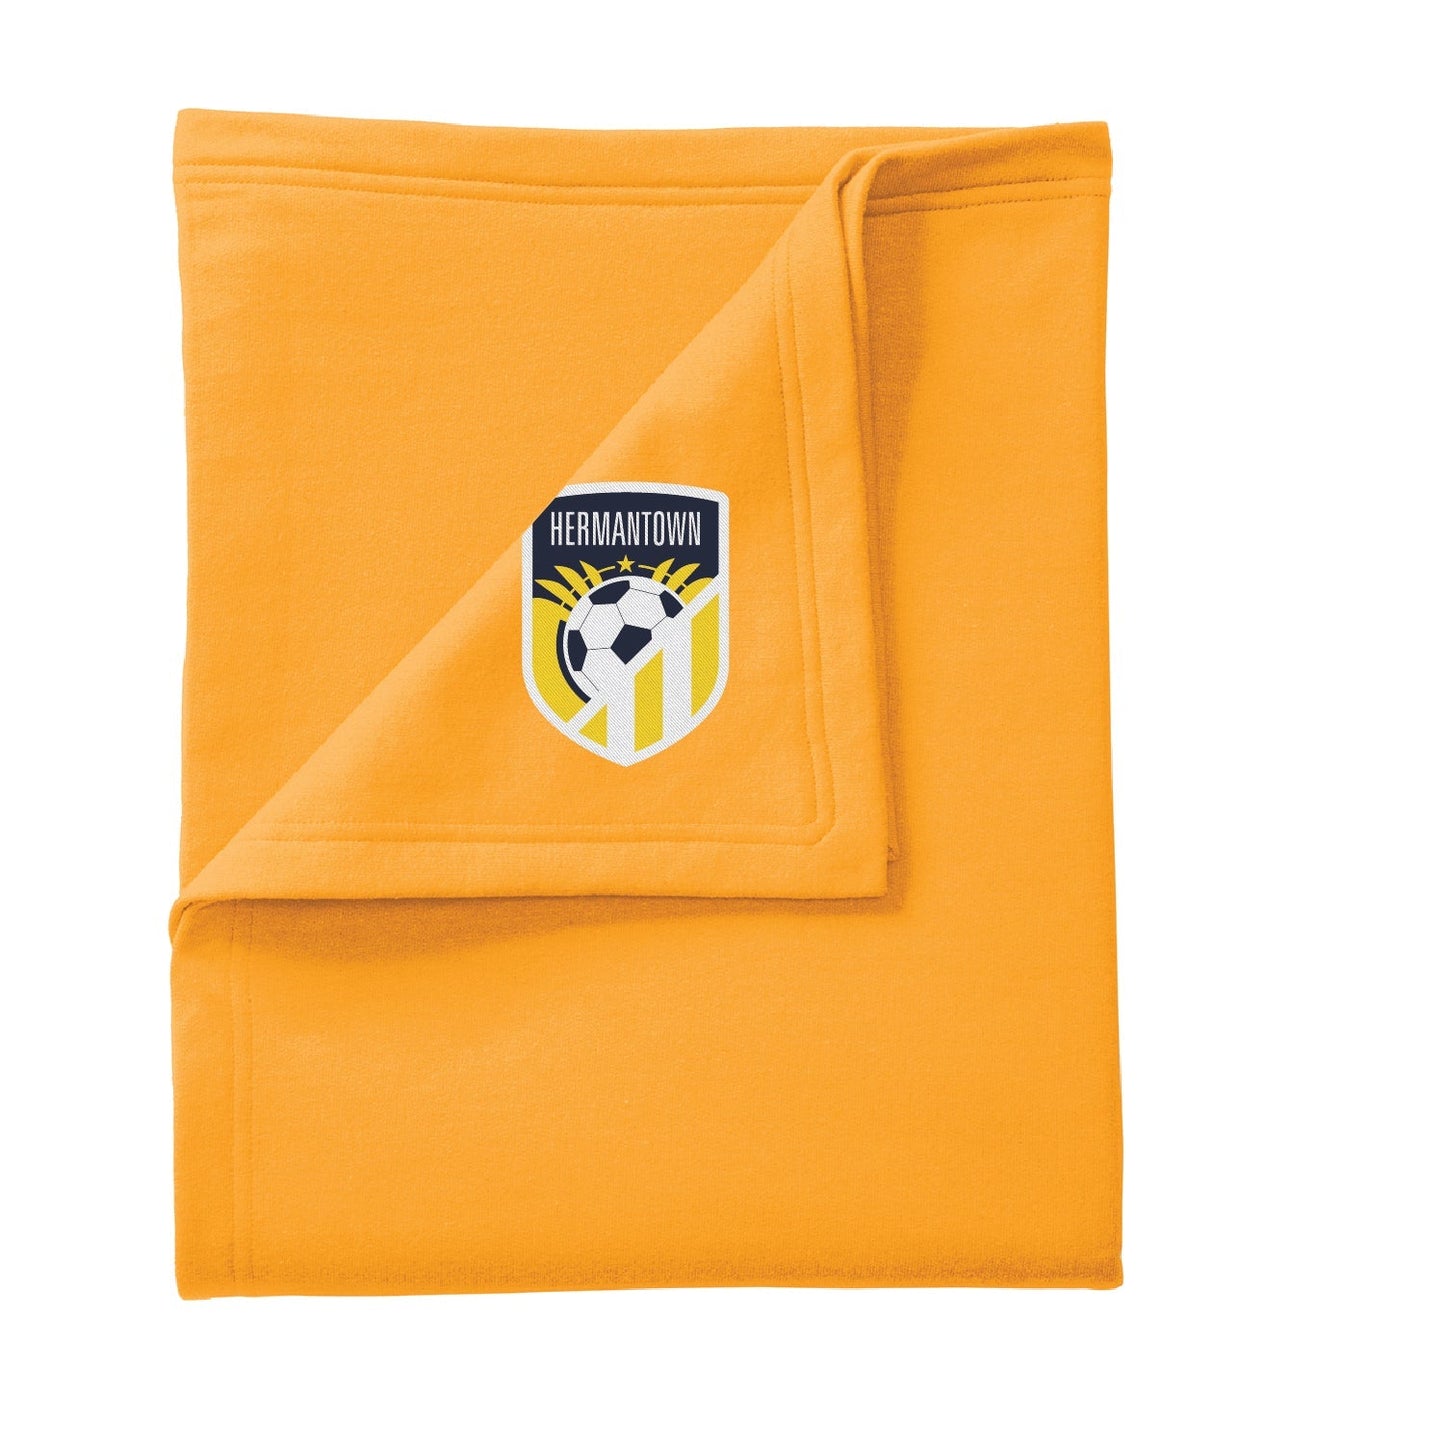 Hermantown Soccer Core Fleece Sweatshirt Blanket - DSP On Demand